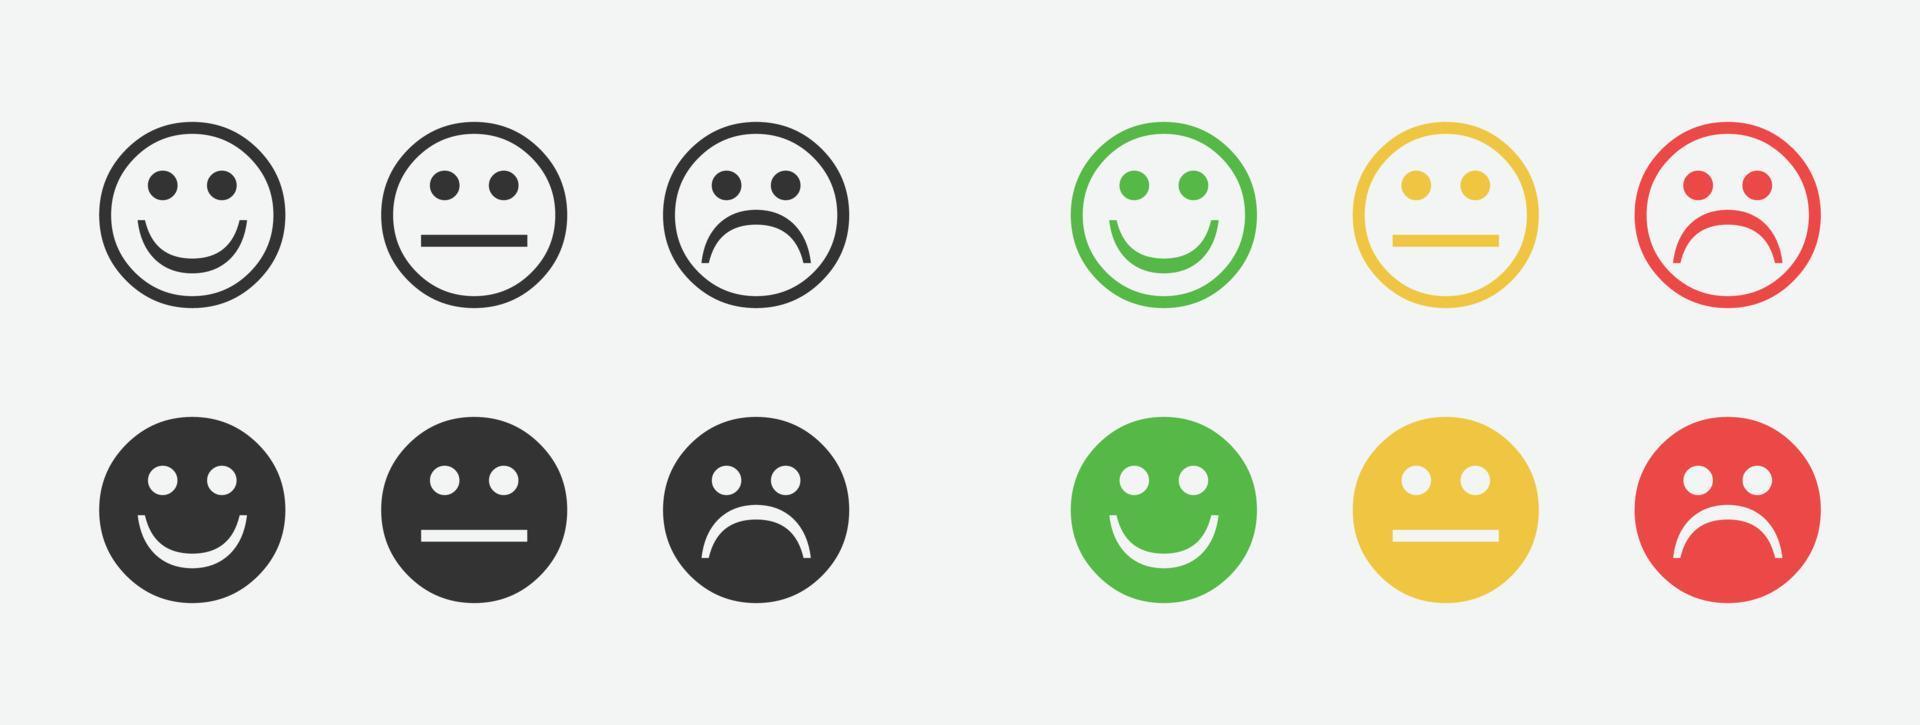 feedback feliz, conjunto de vetores de rosto irritado. rostos positivos, negativos e neutros com um sorriso.